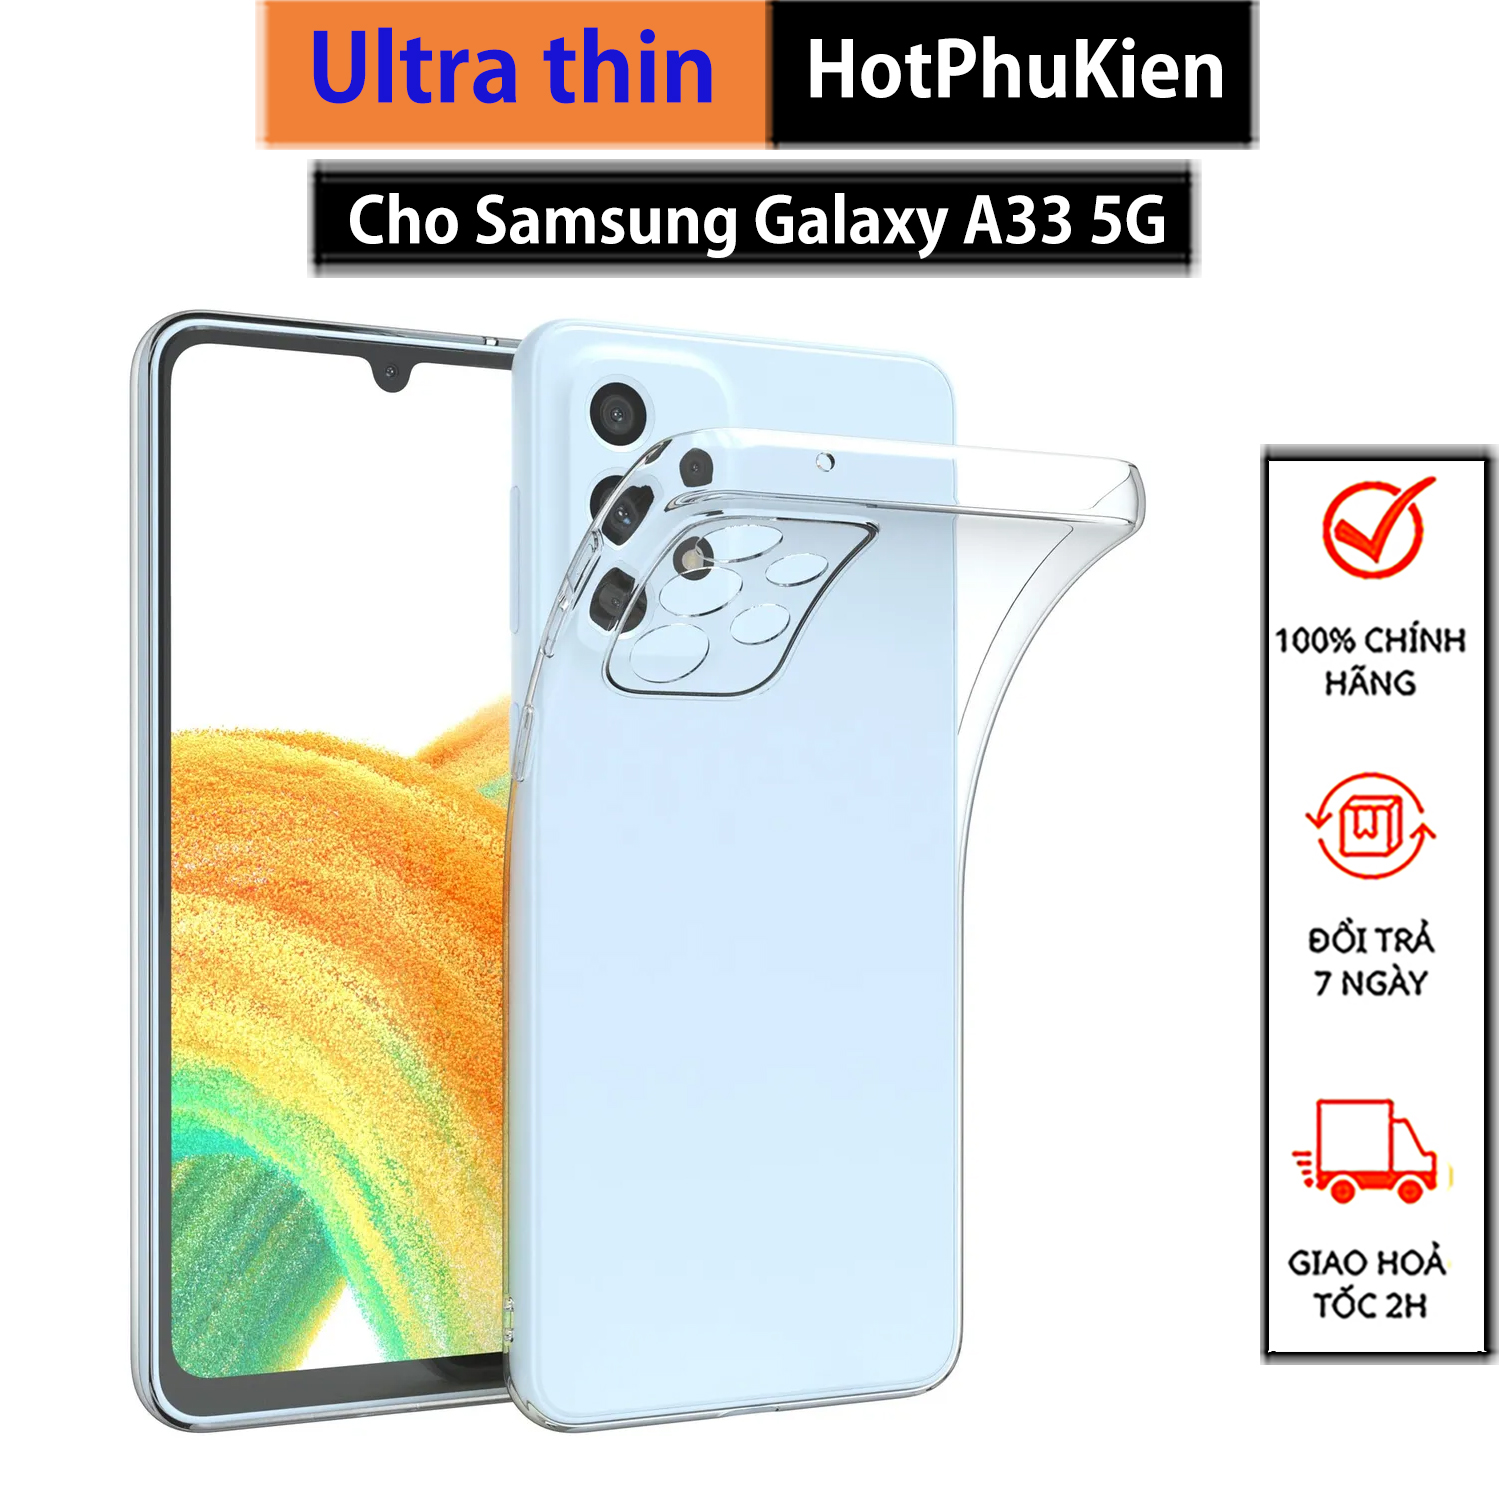 Ốp lưng silicon dẻo cho Samsung Galaxy A33 5G hiệu Ultra Thin mỏng 0.6mm độ trong tuyệt đối chống trầy xước - Hàng nhập khẩu